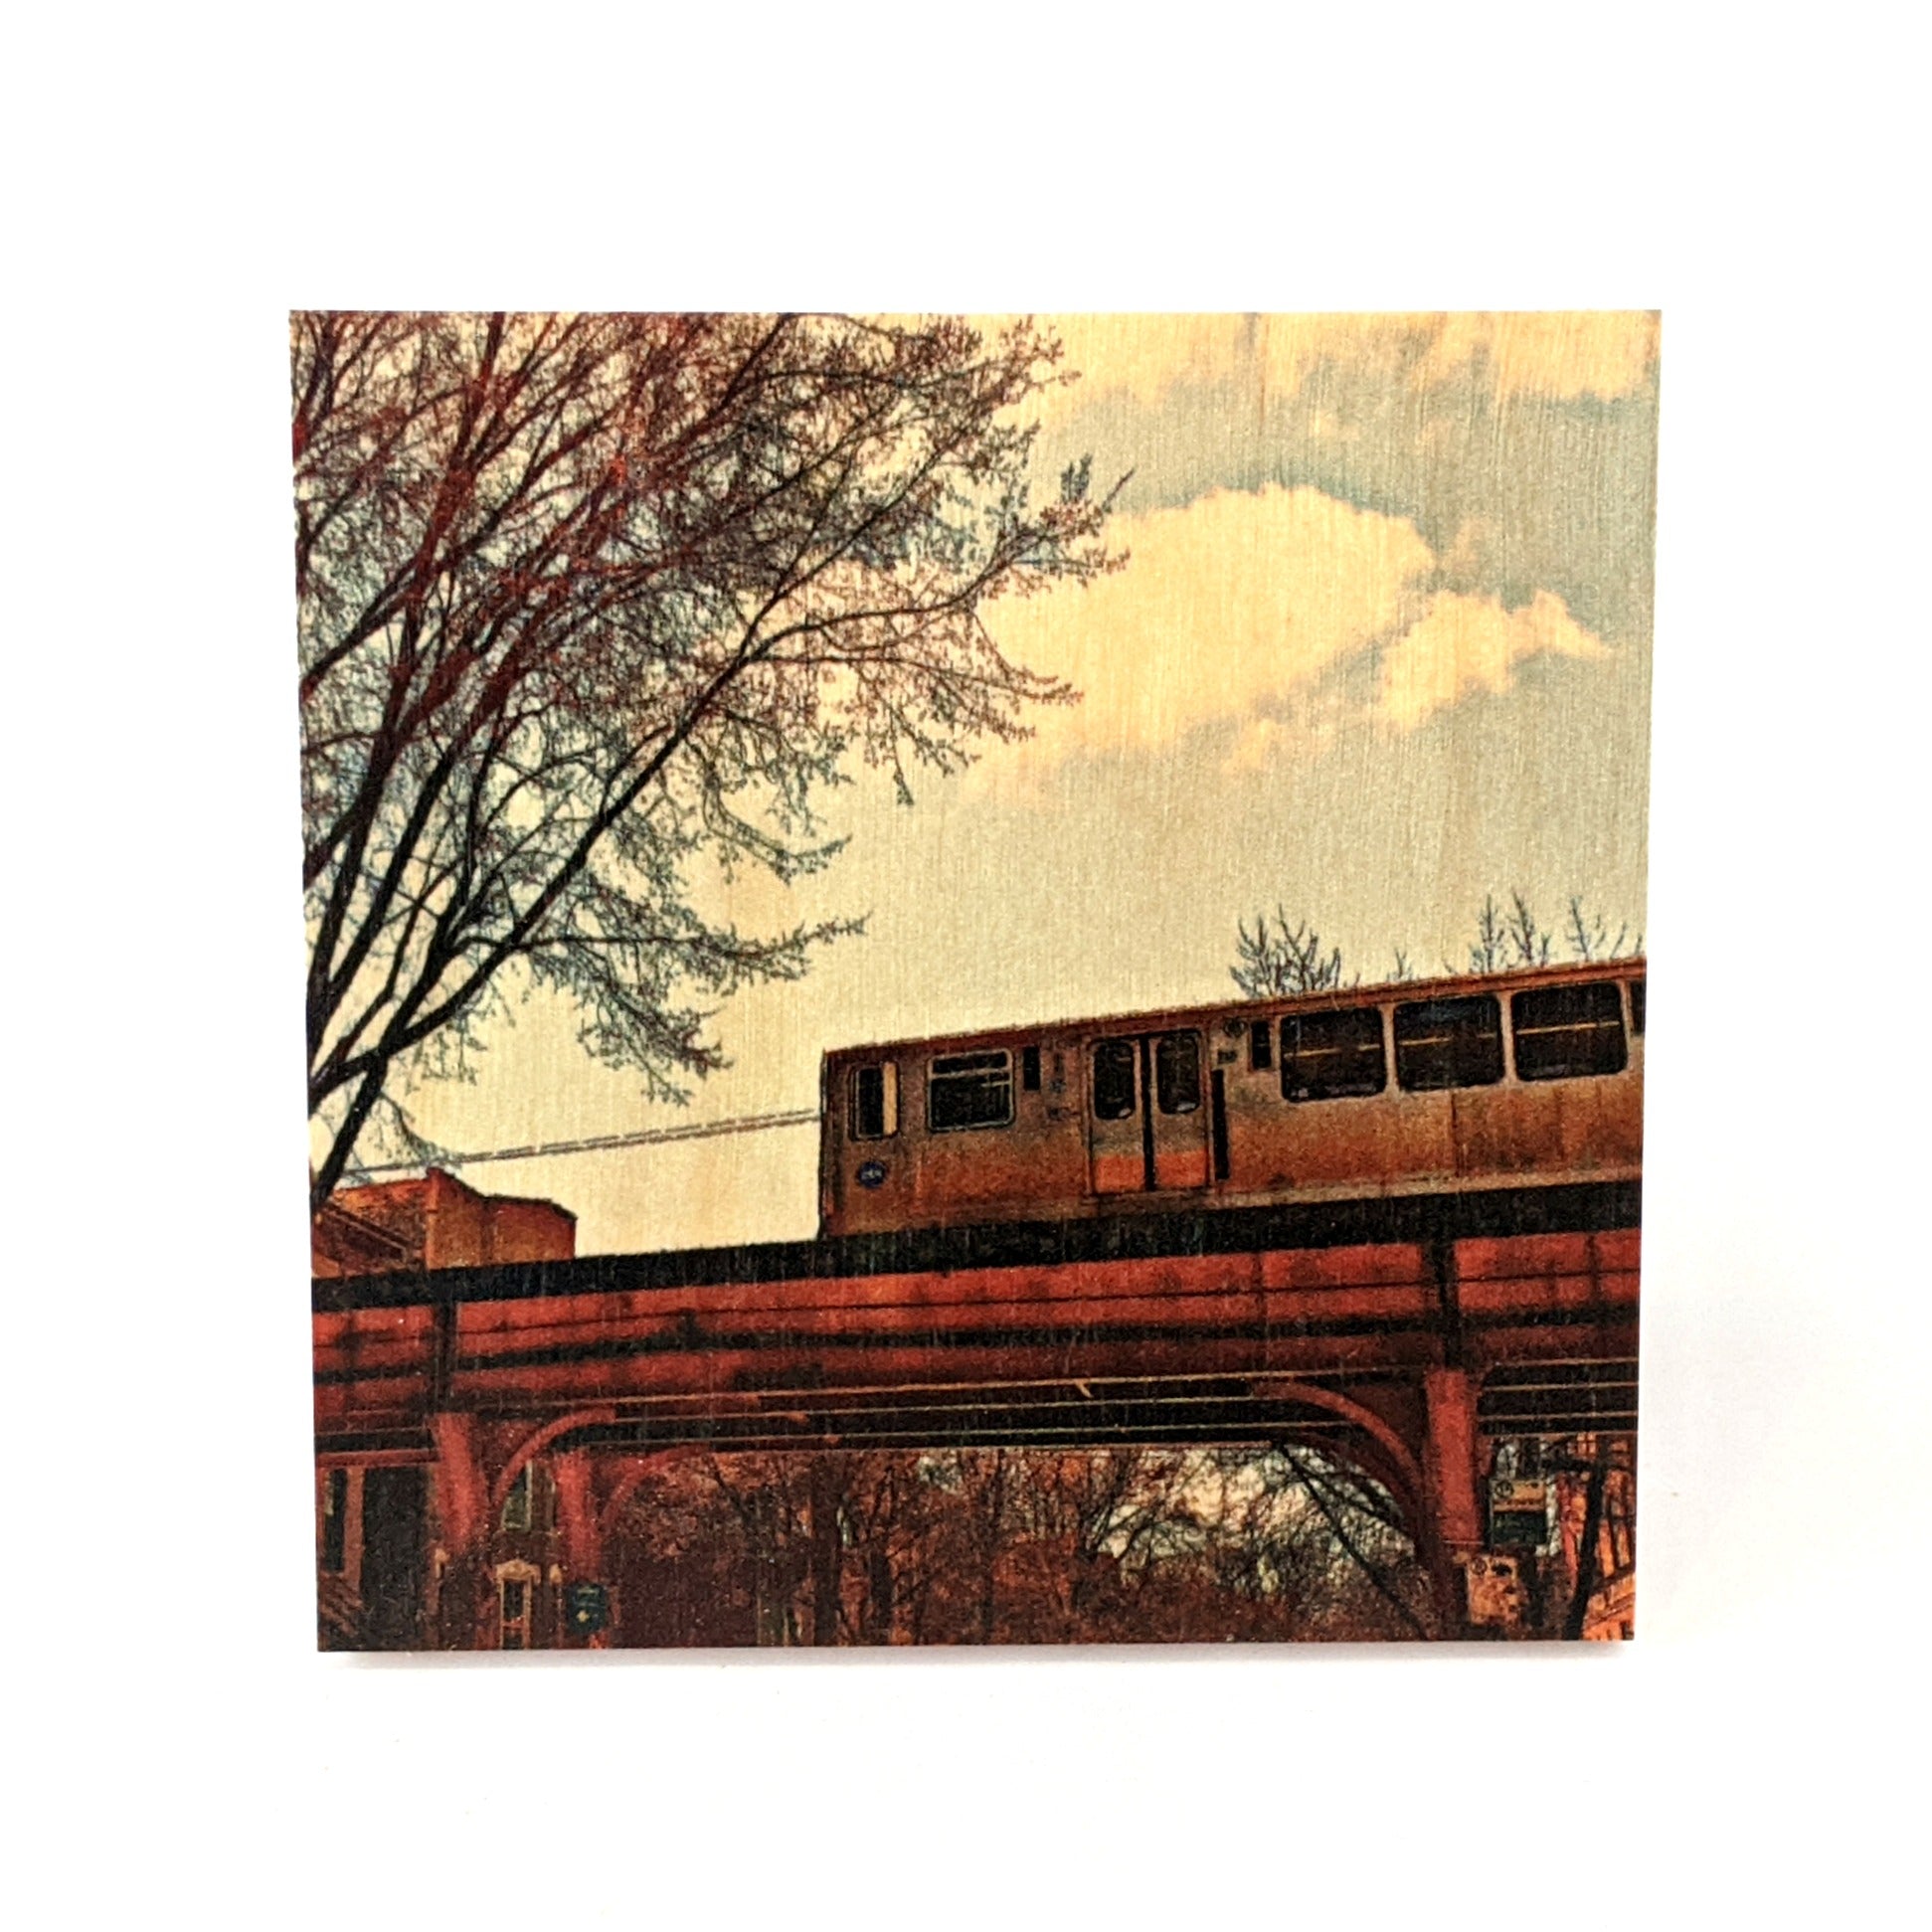 Coaster - Chicago - El Train